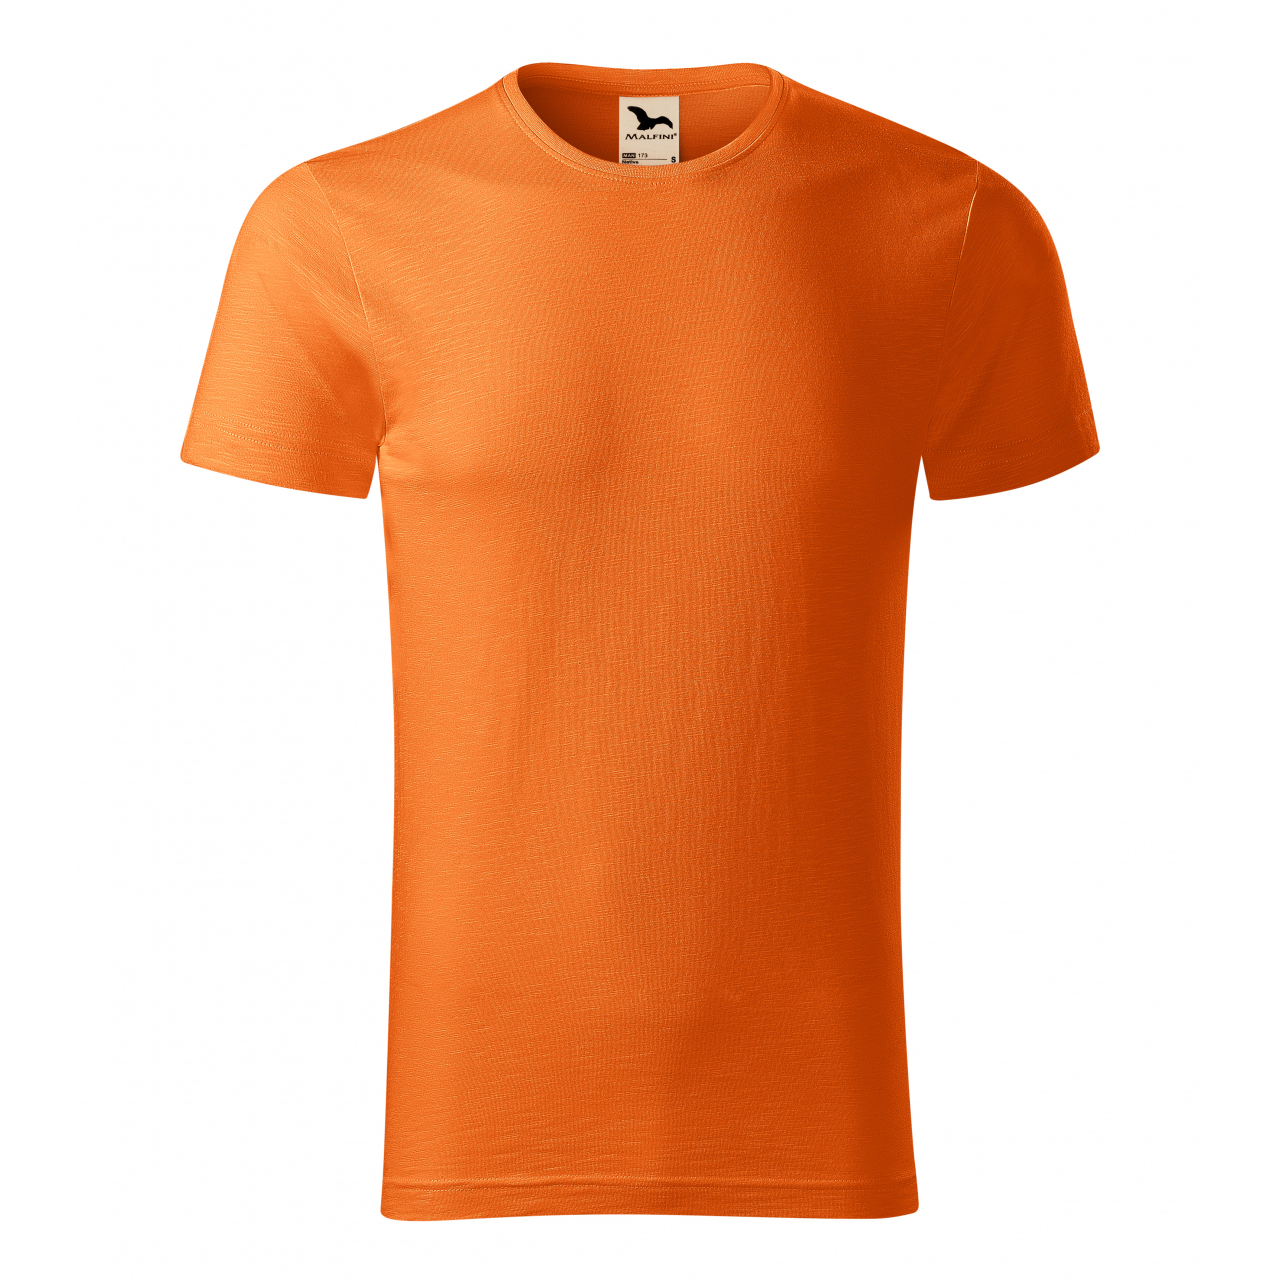 Tričko pánské Malfini Native - oranžové, XXL